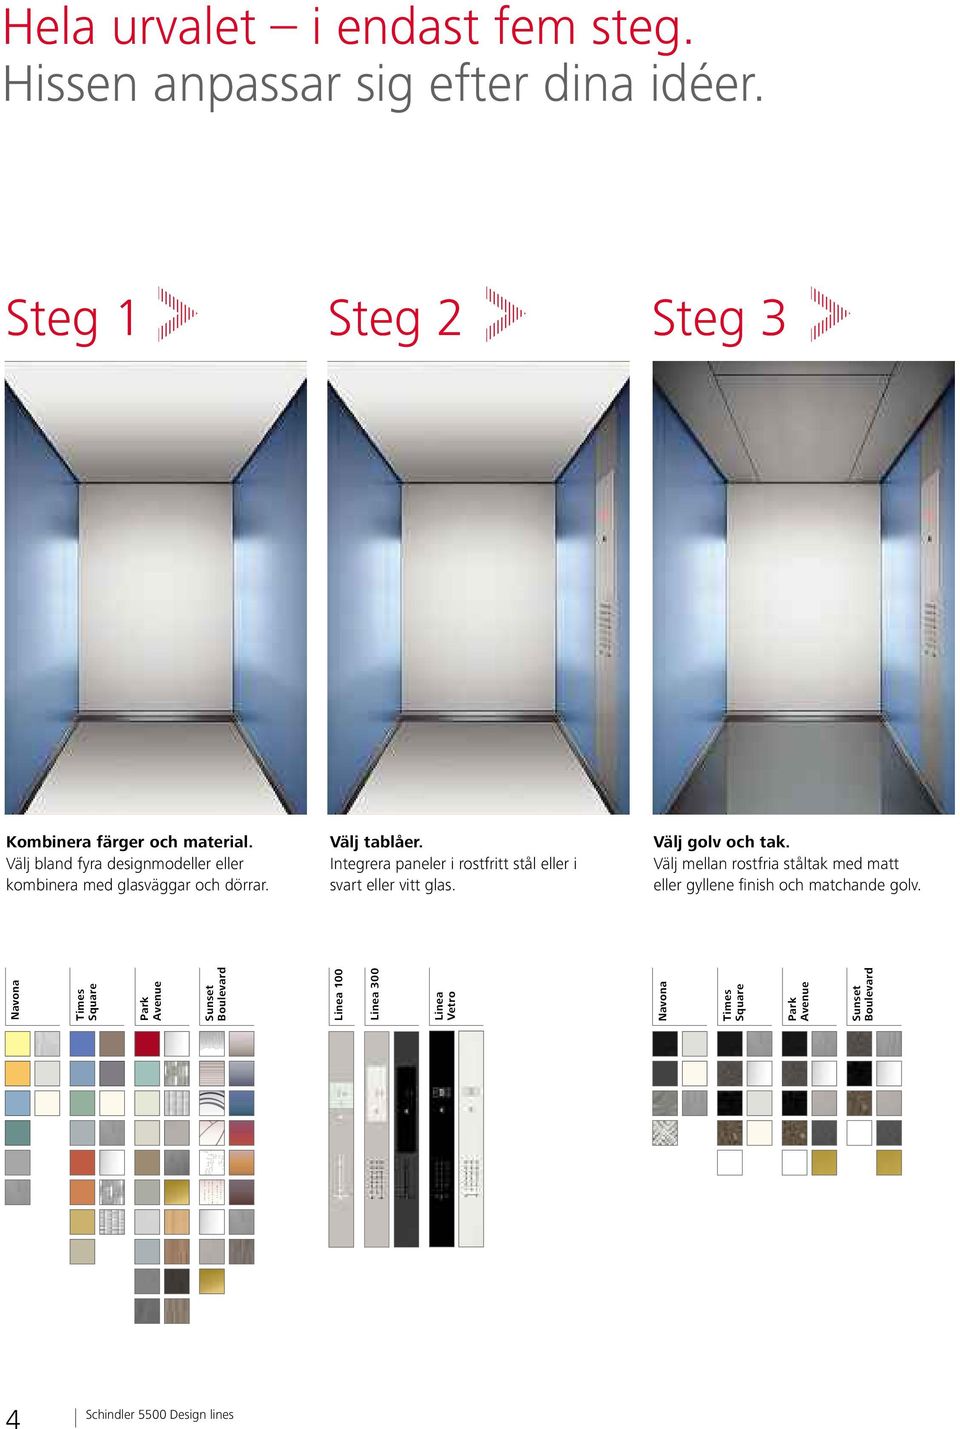 Integrera paneler i rostfritt stål eller i svart eller vitt glas. Välj golv och tak.